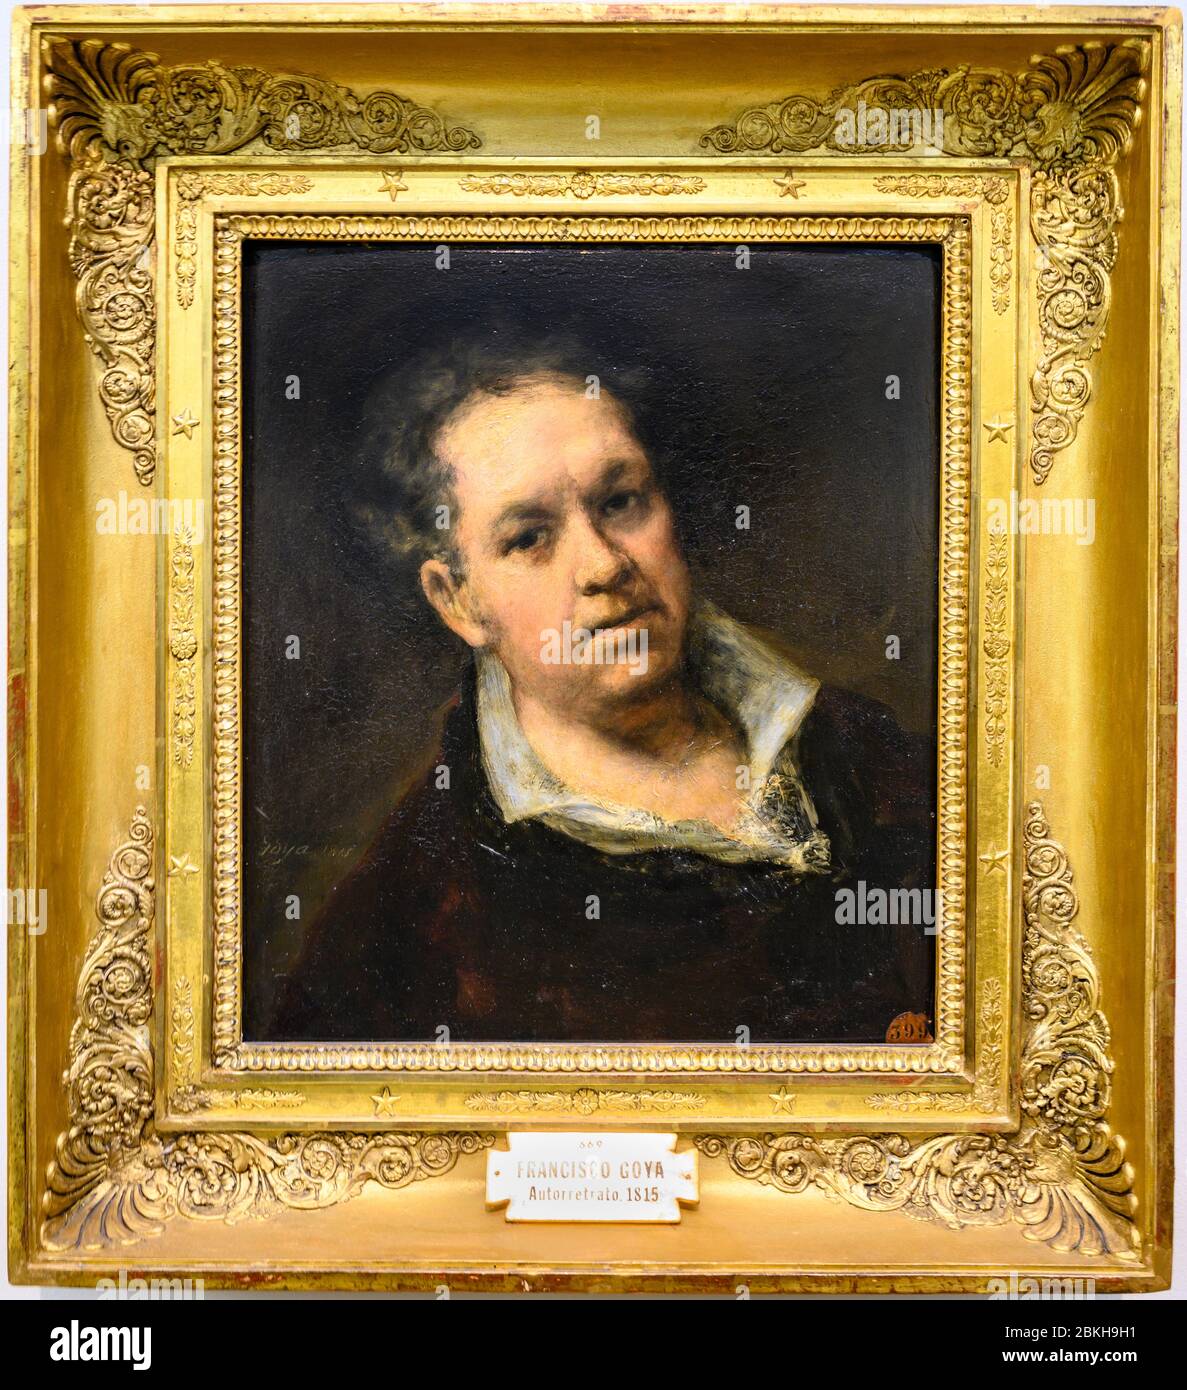 Autoportrait de Francisco José de Goya y Lucientes, peint en 1815 à l'âge de 69 ans. À l'Académie royale des beaux-arts de San Fernando, Madrid, Spa Banque D'Images